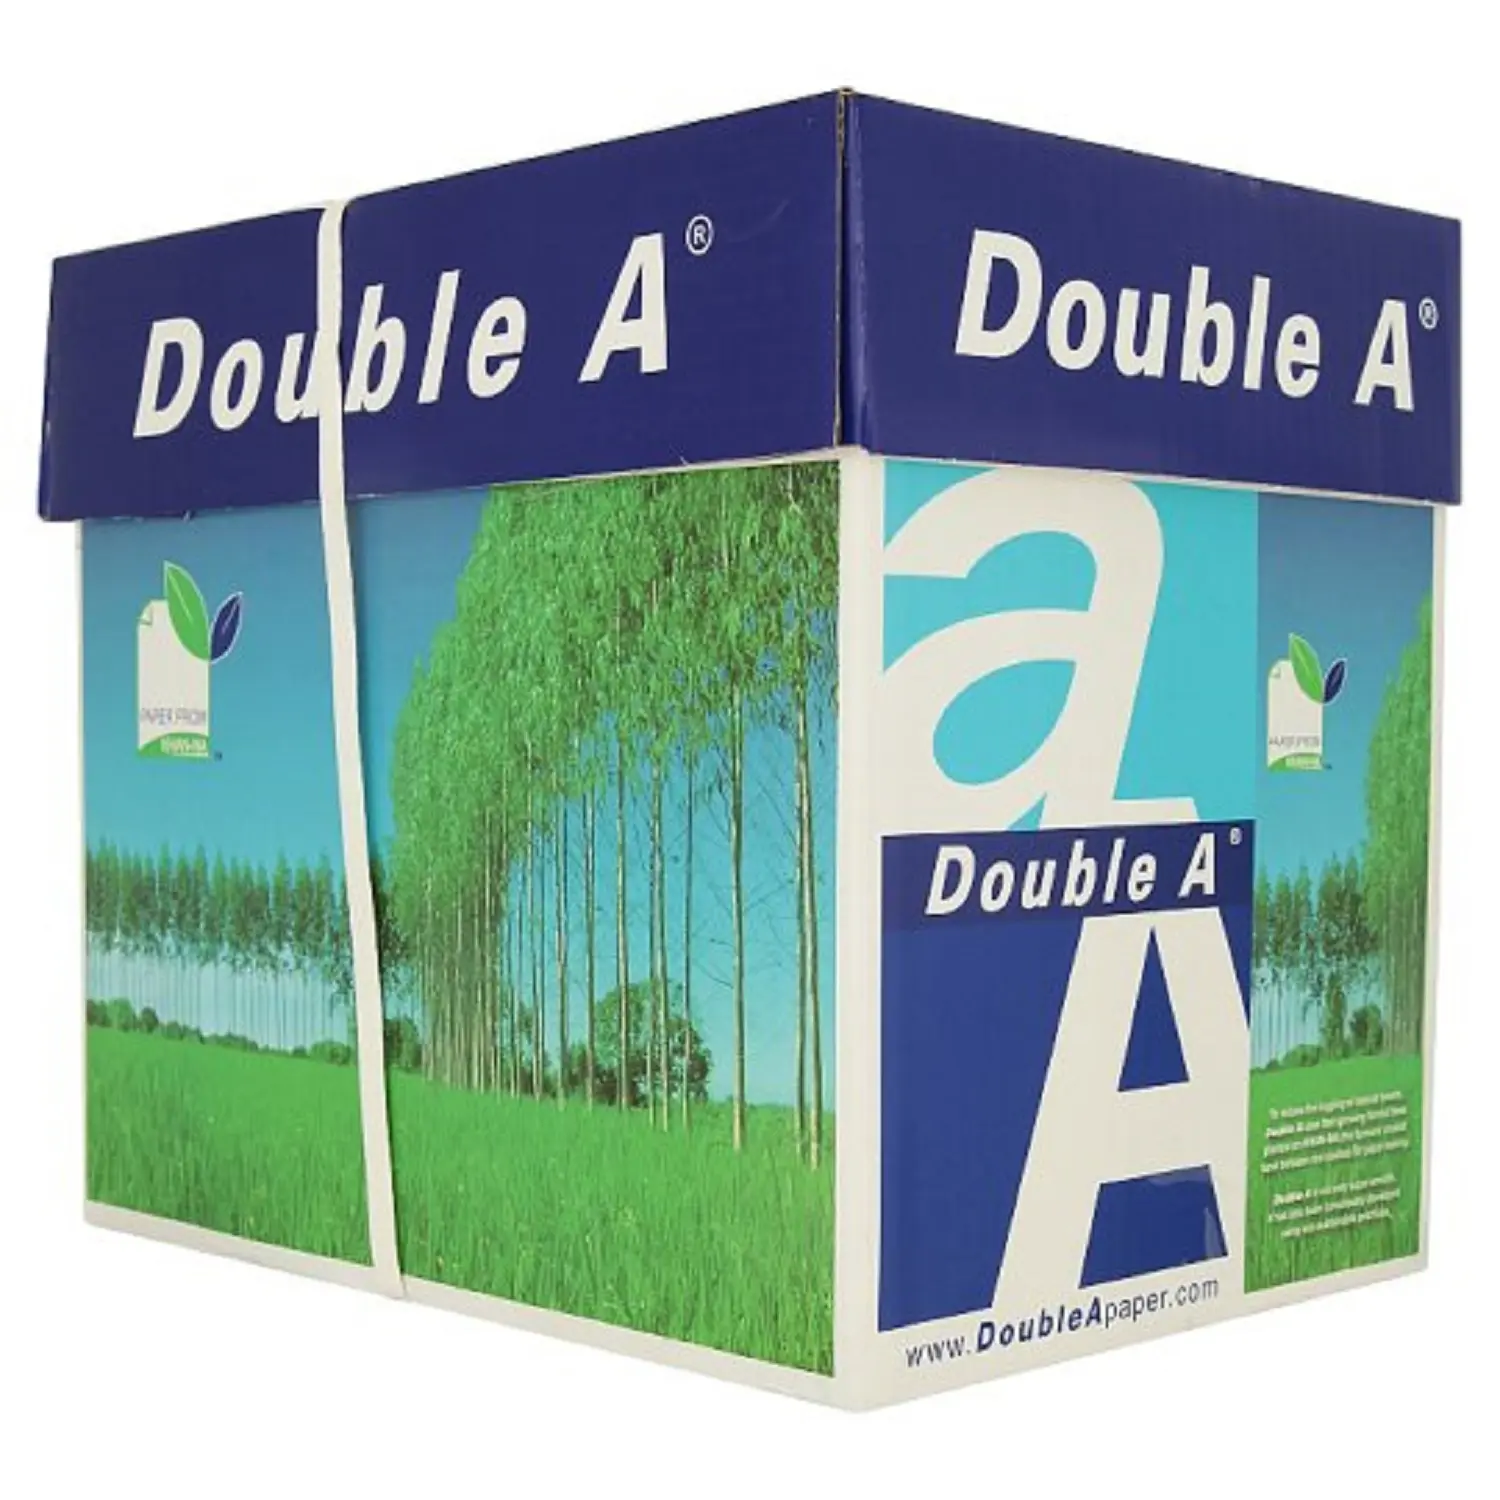 100% Holz zellstoff Doppel A A4 Kopierpapier Ein A4-Kopierpapier 80g/m² 75g/m² 70g/m²/Kopierpapier OEM-Verpackung